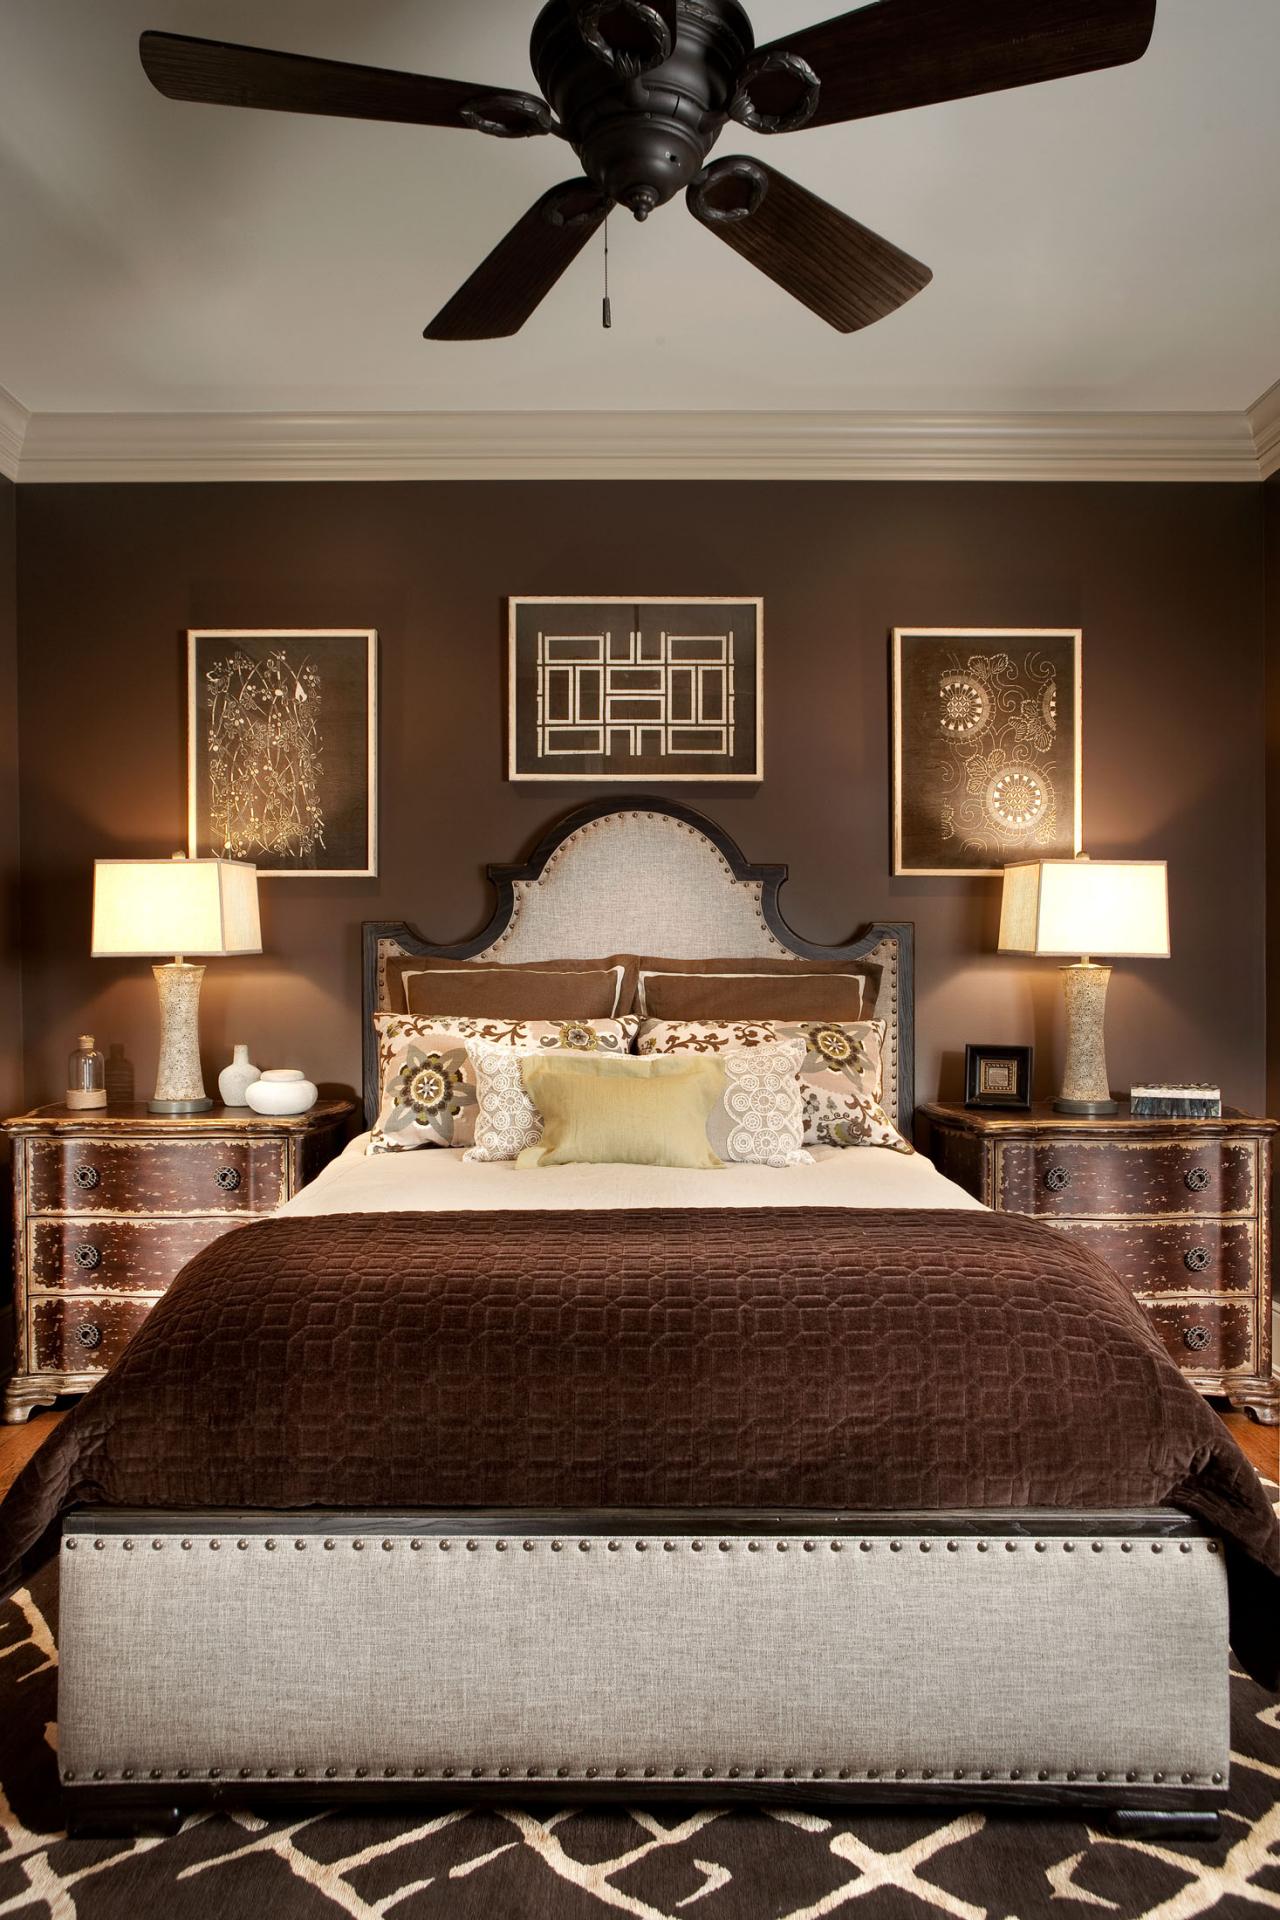 Bedroom in Chocolate Brown | HGTV Chocolate Brown Room Designs